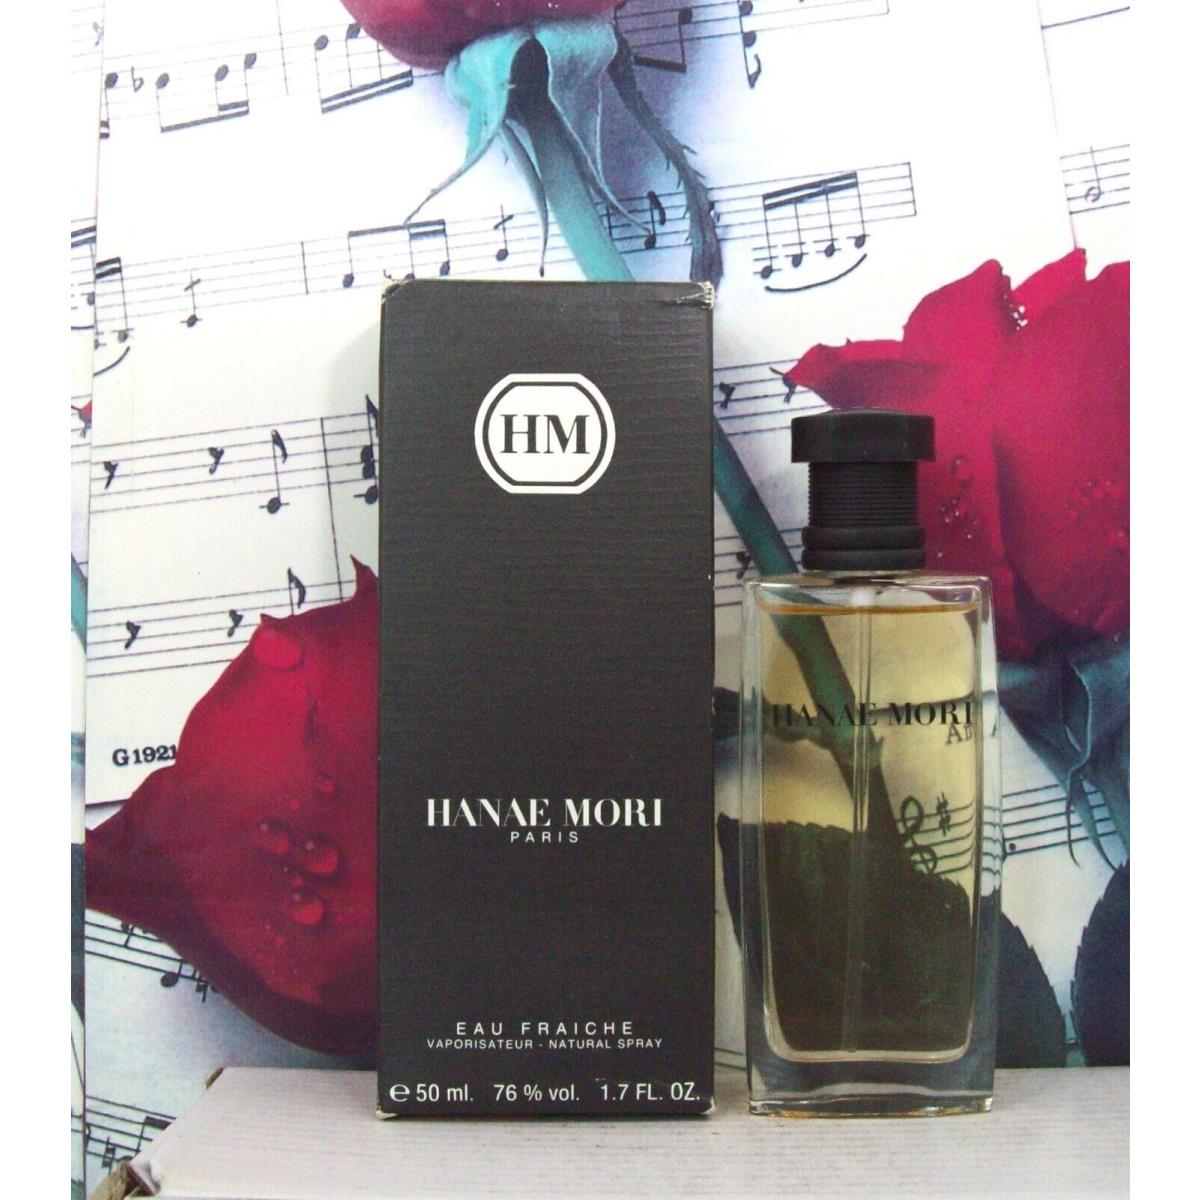 Hanae Mori HM Eau Fraiche Spray 1.7 Fl. Oz. Wb. Vintage